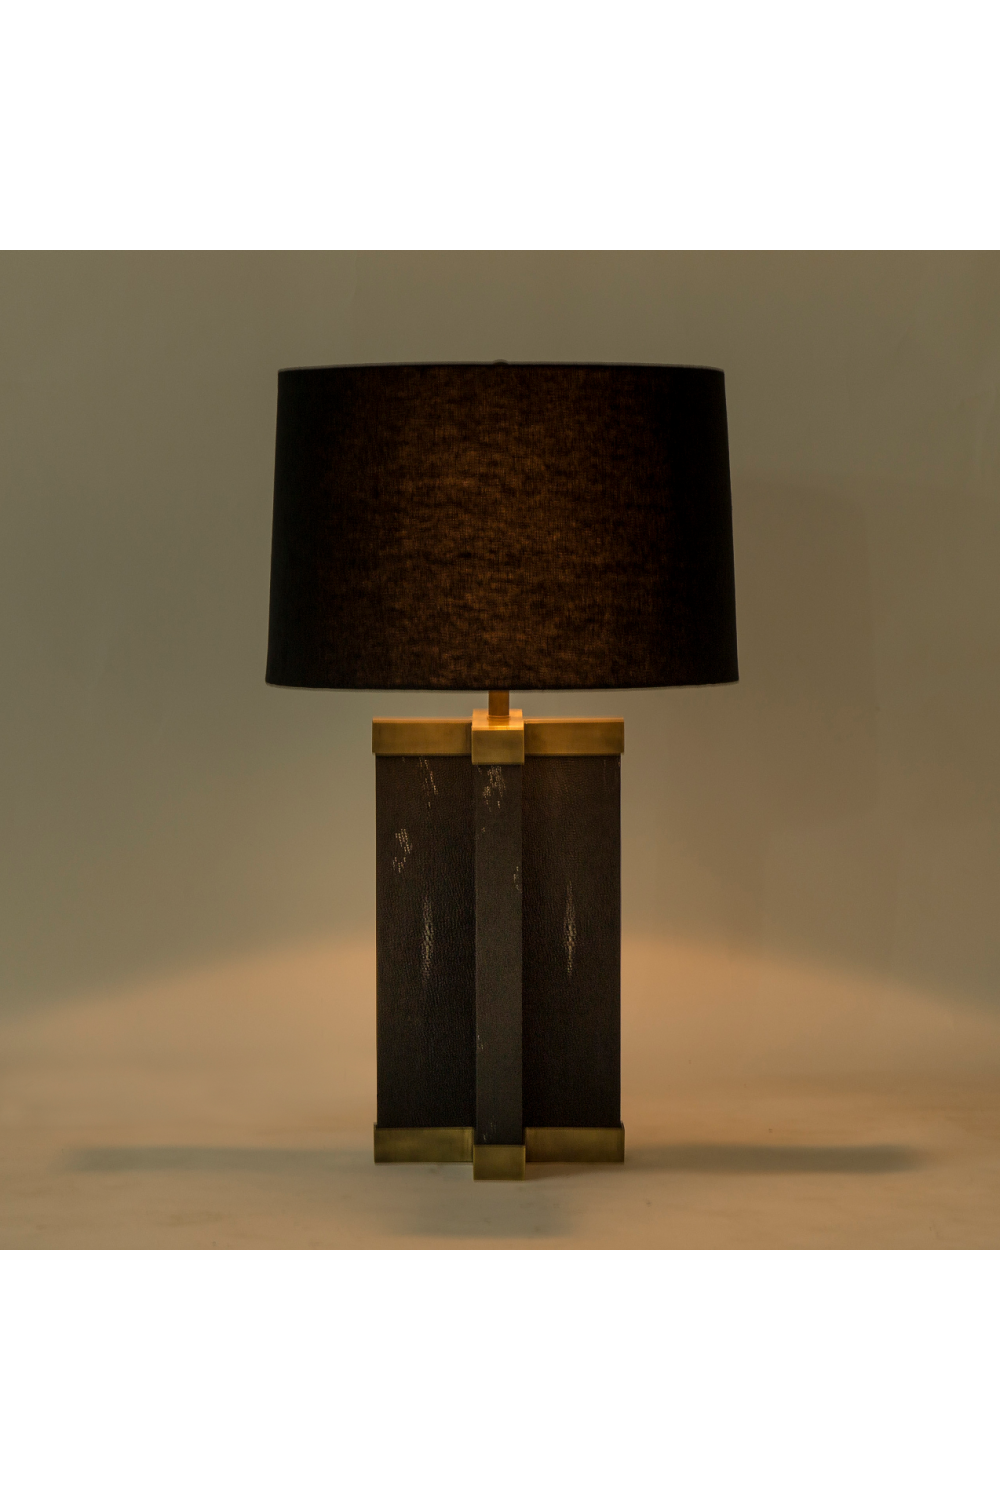 Black Hemp Shade Lamp | Andrew Martin Shagreen | OROA